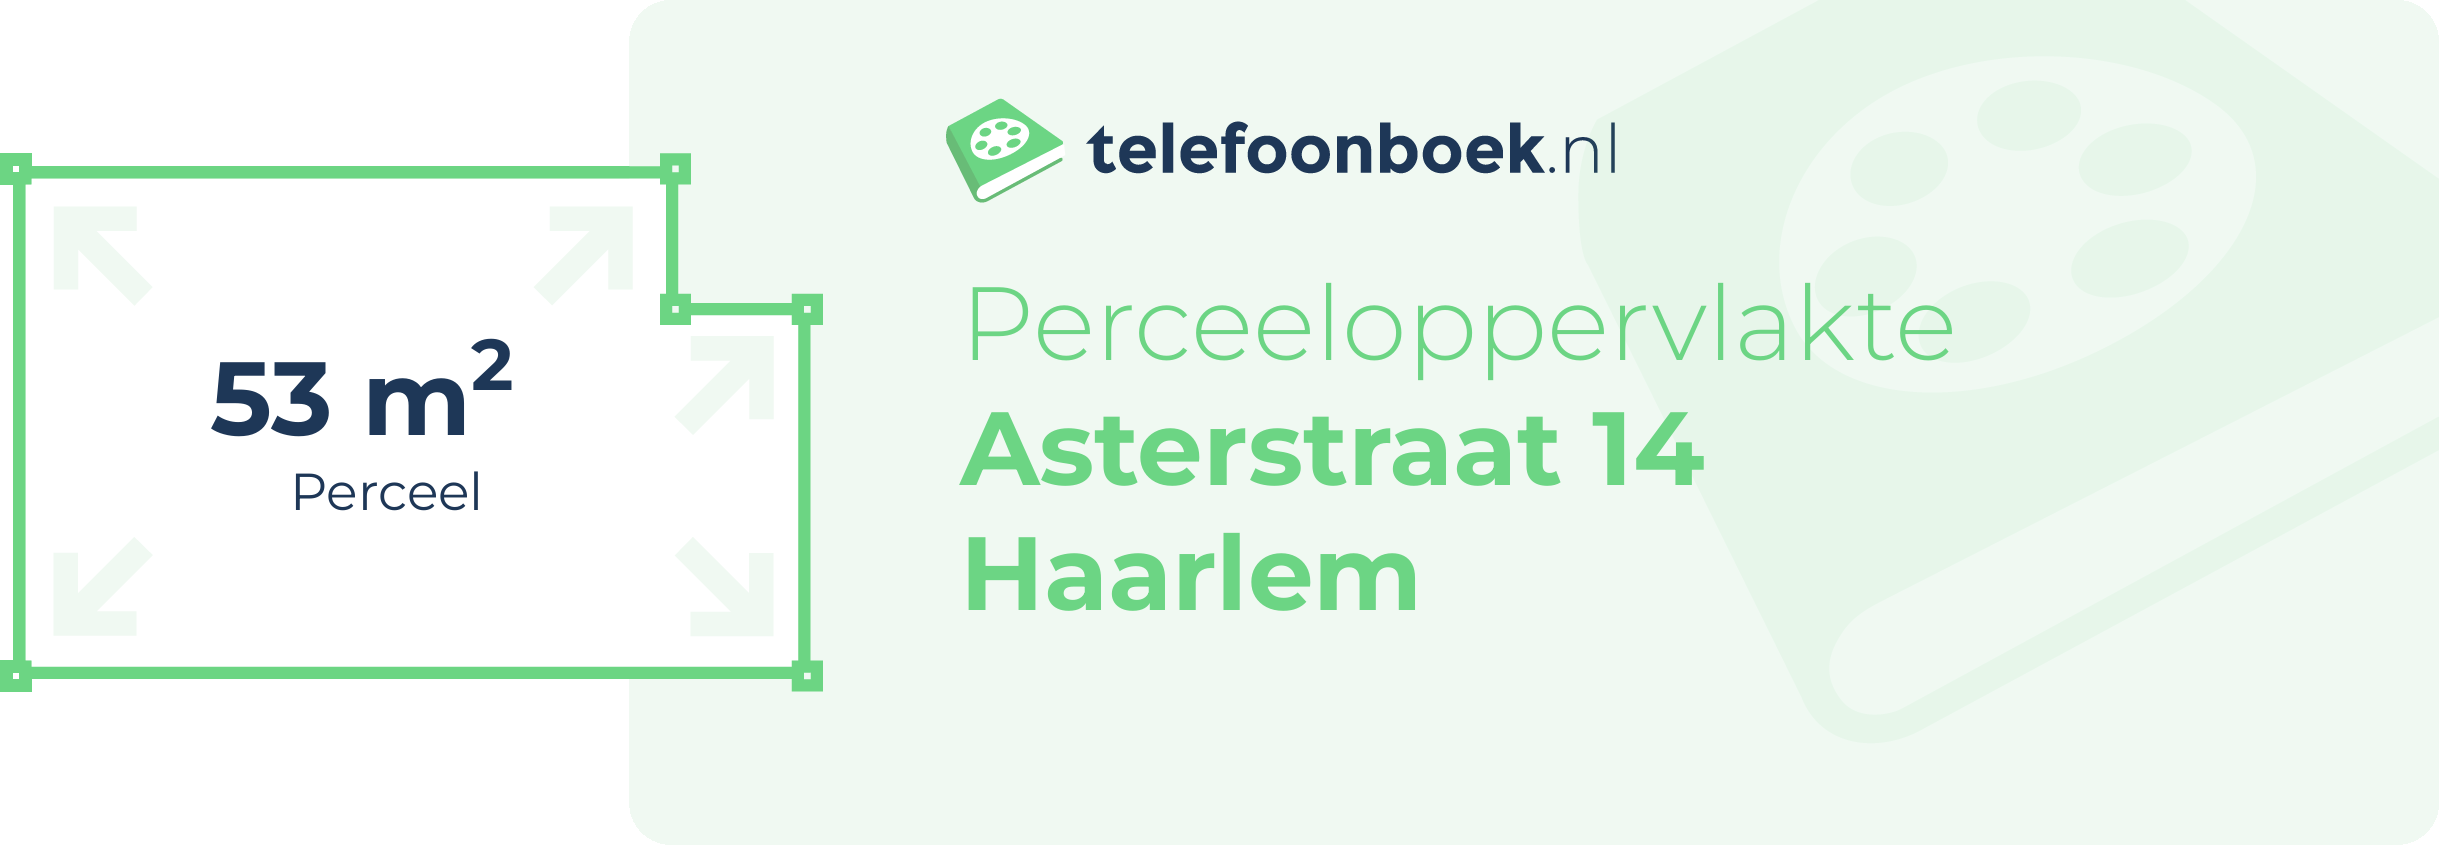 Perceeloppervlakte Asterstraat 14 Haarlem